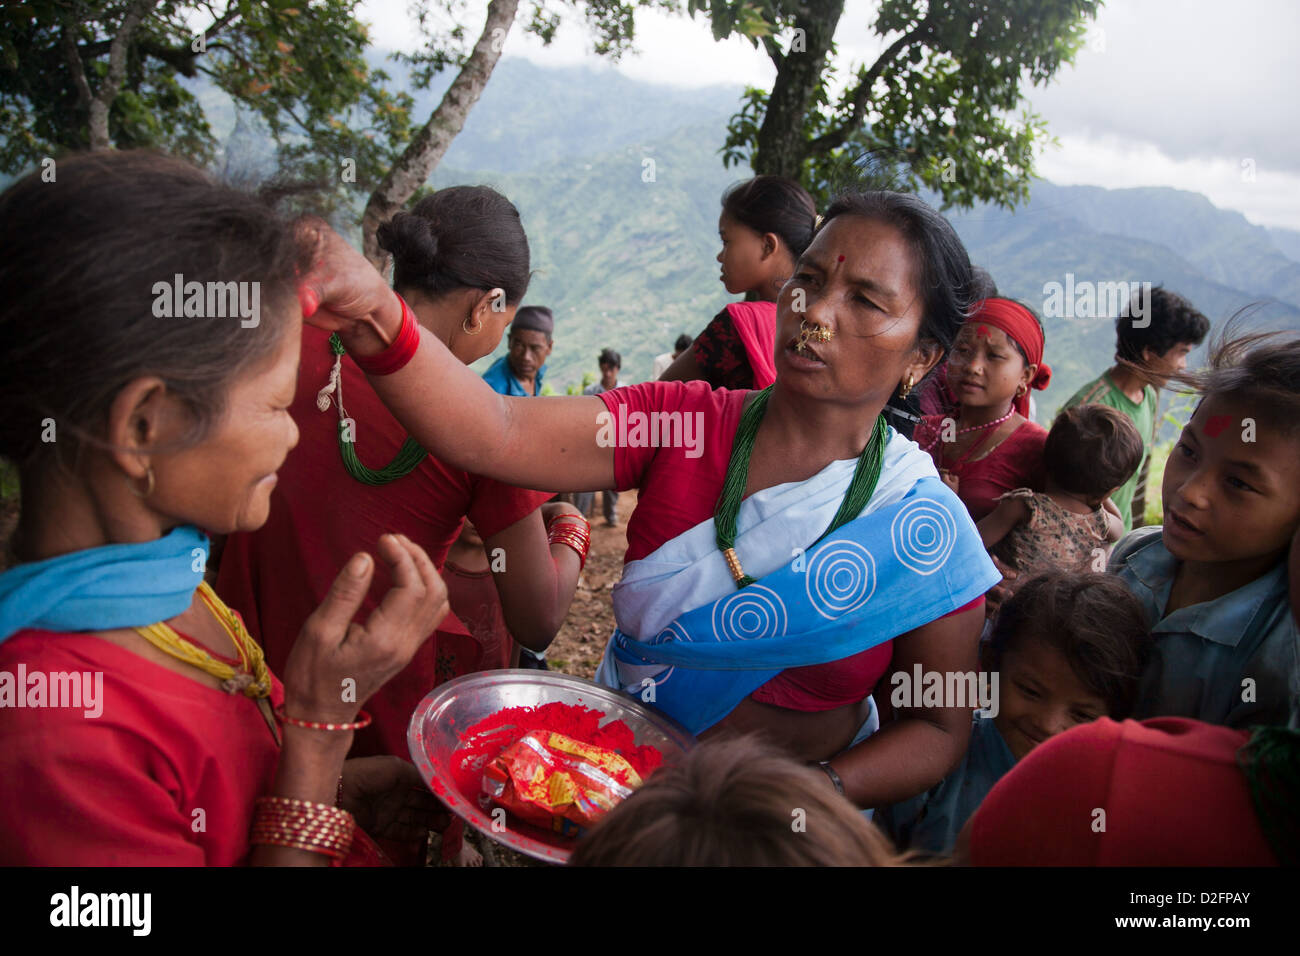 Sanamaya Chepang sta dando Tika alle persone a un raduno in montagna, una tradizione indù significato buona fortuna e salute. Foto Stock